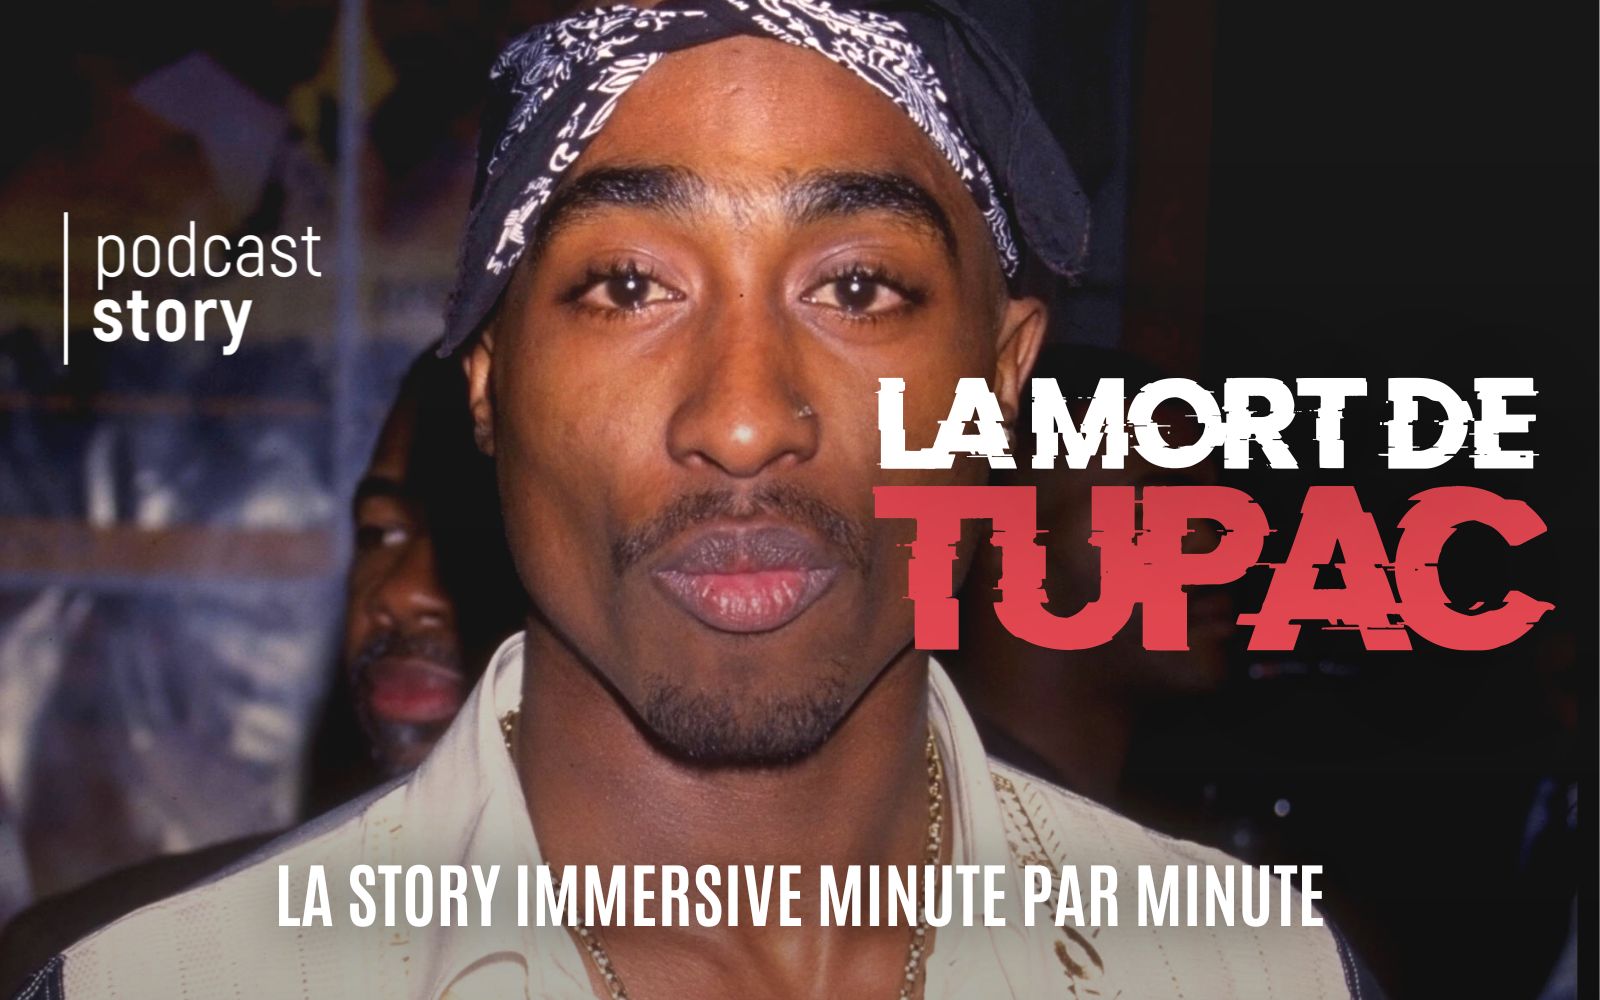 LA MORT DE TUPAC – La story immersive minute par minute